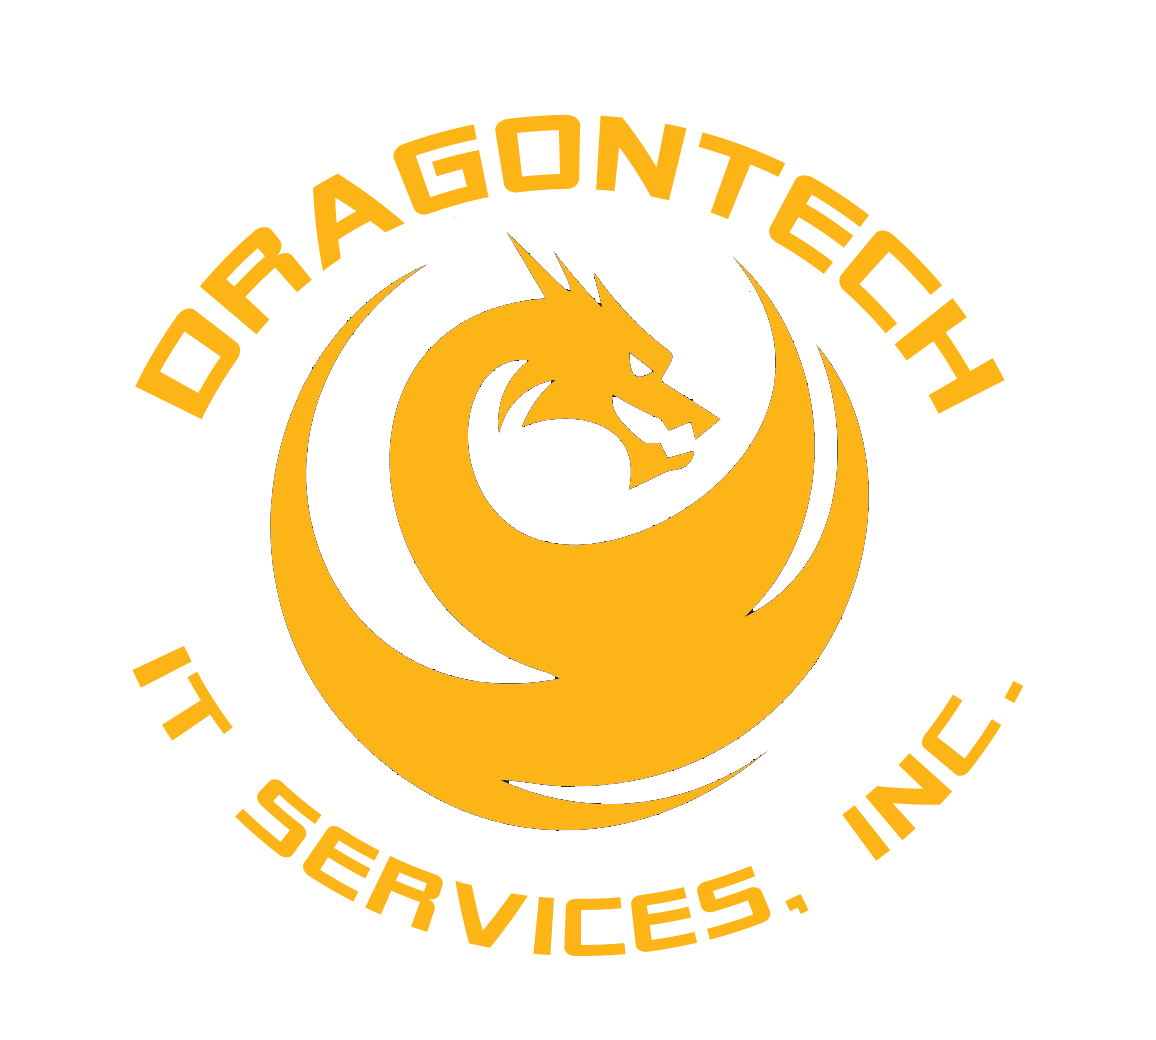 DragonTech IT Services, Inc